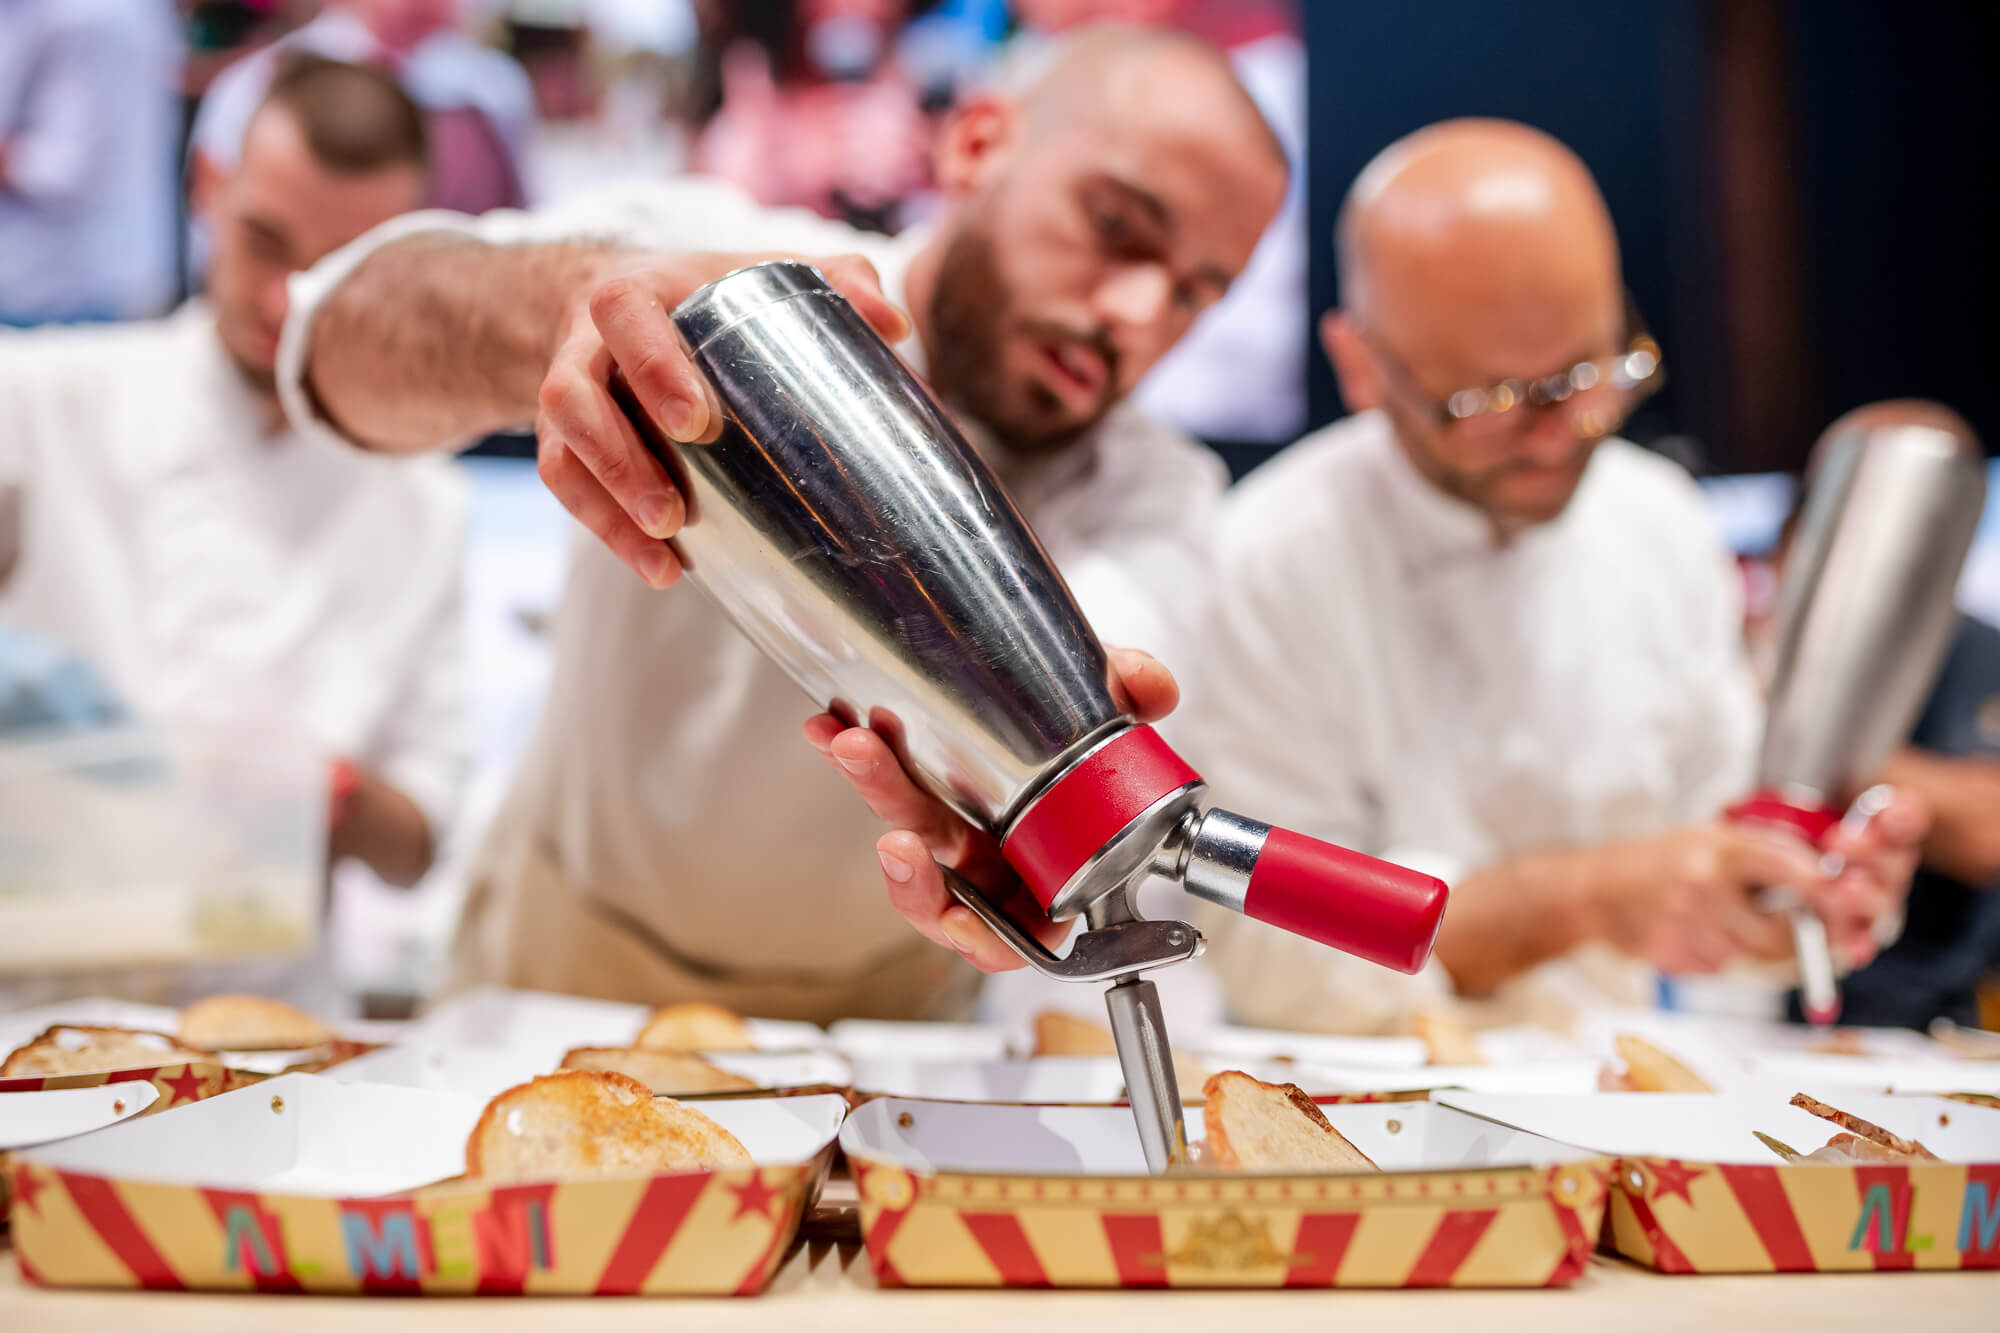 Al Mèni Rimini | Show Cooking | Circo 8 e mezzo